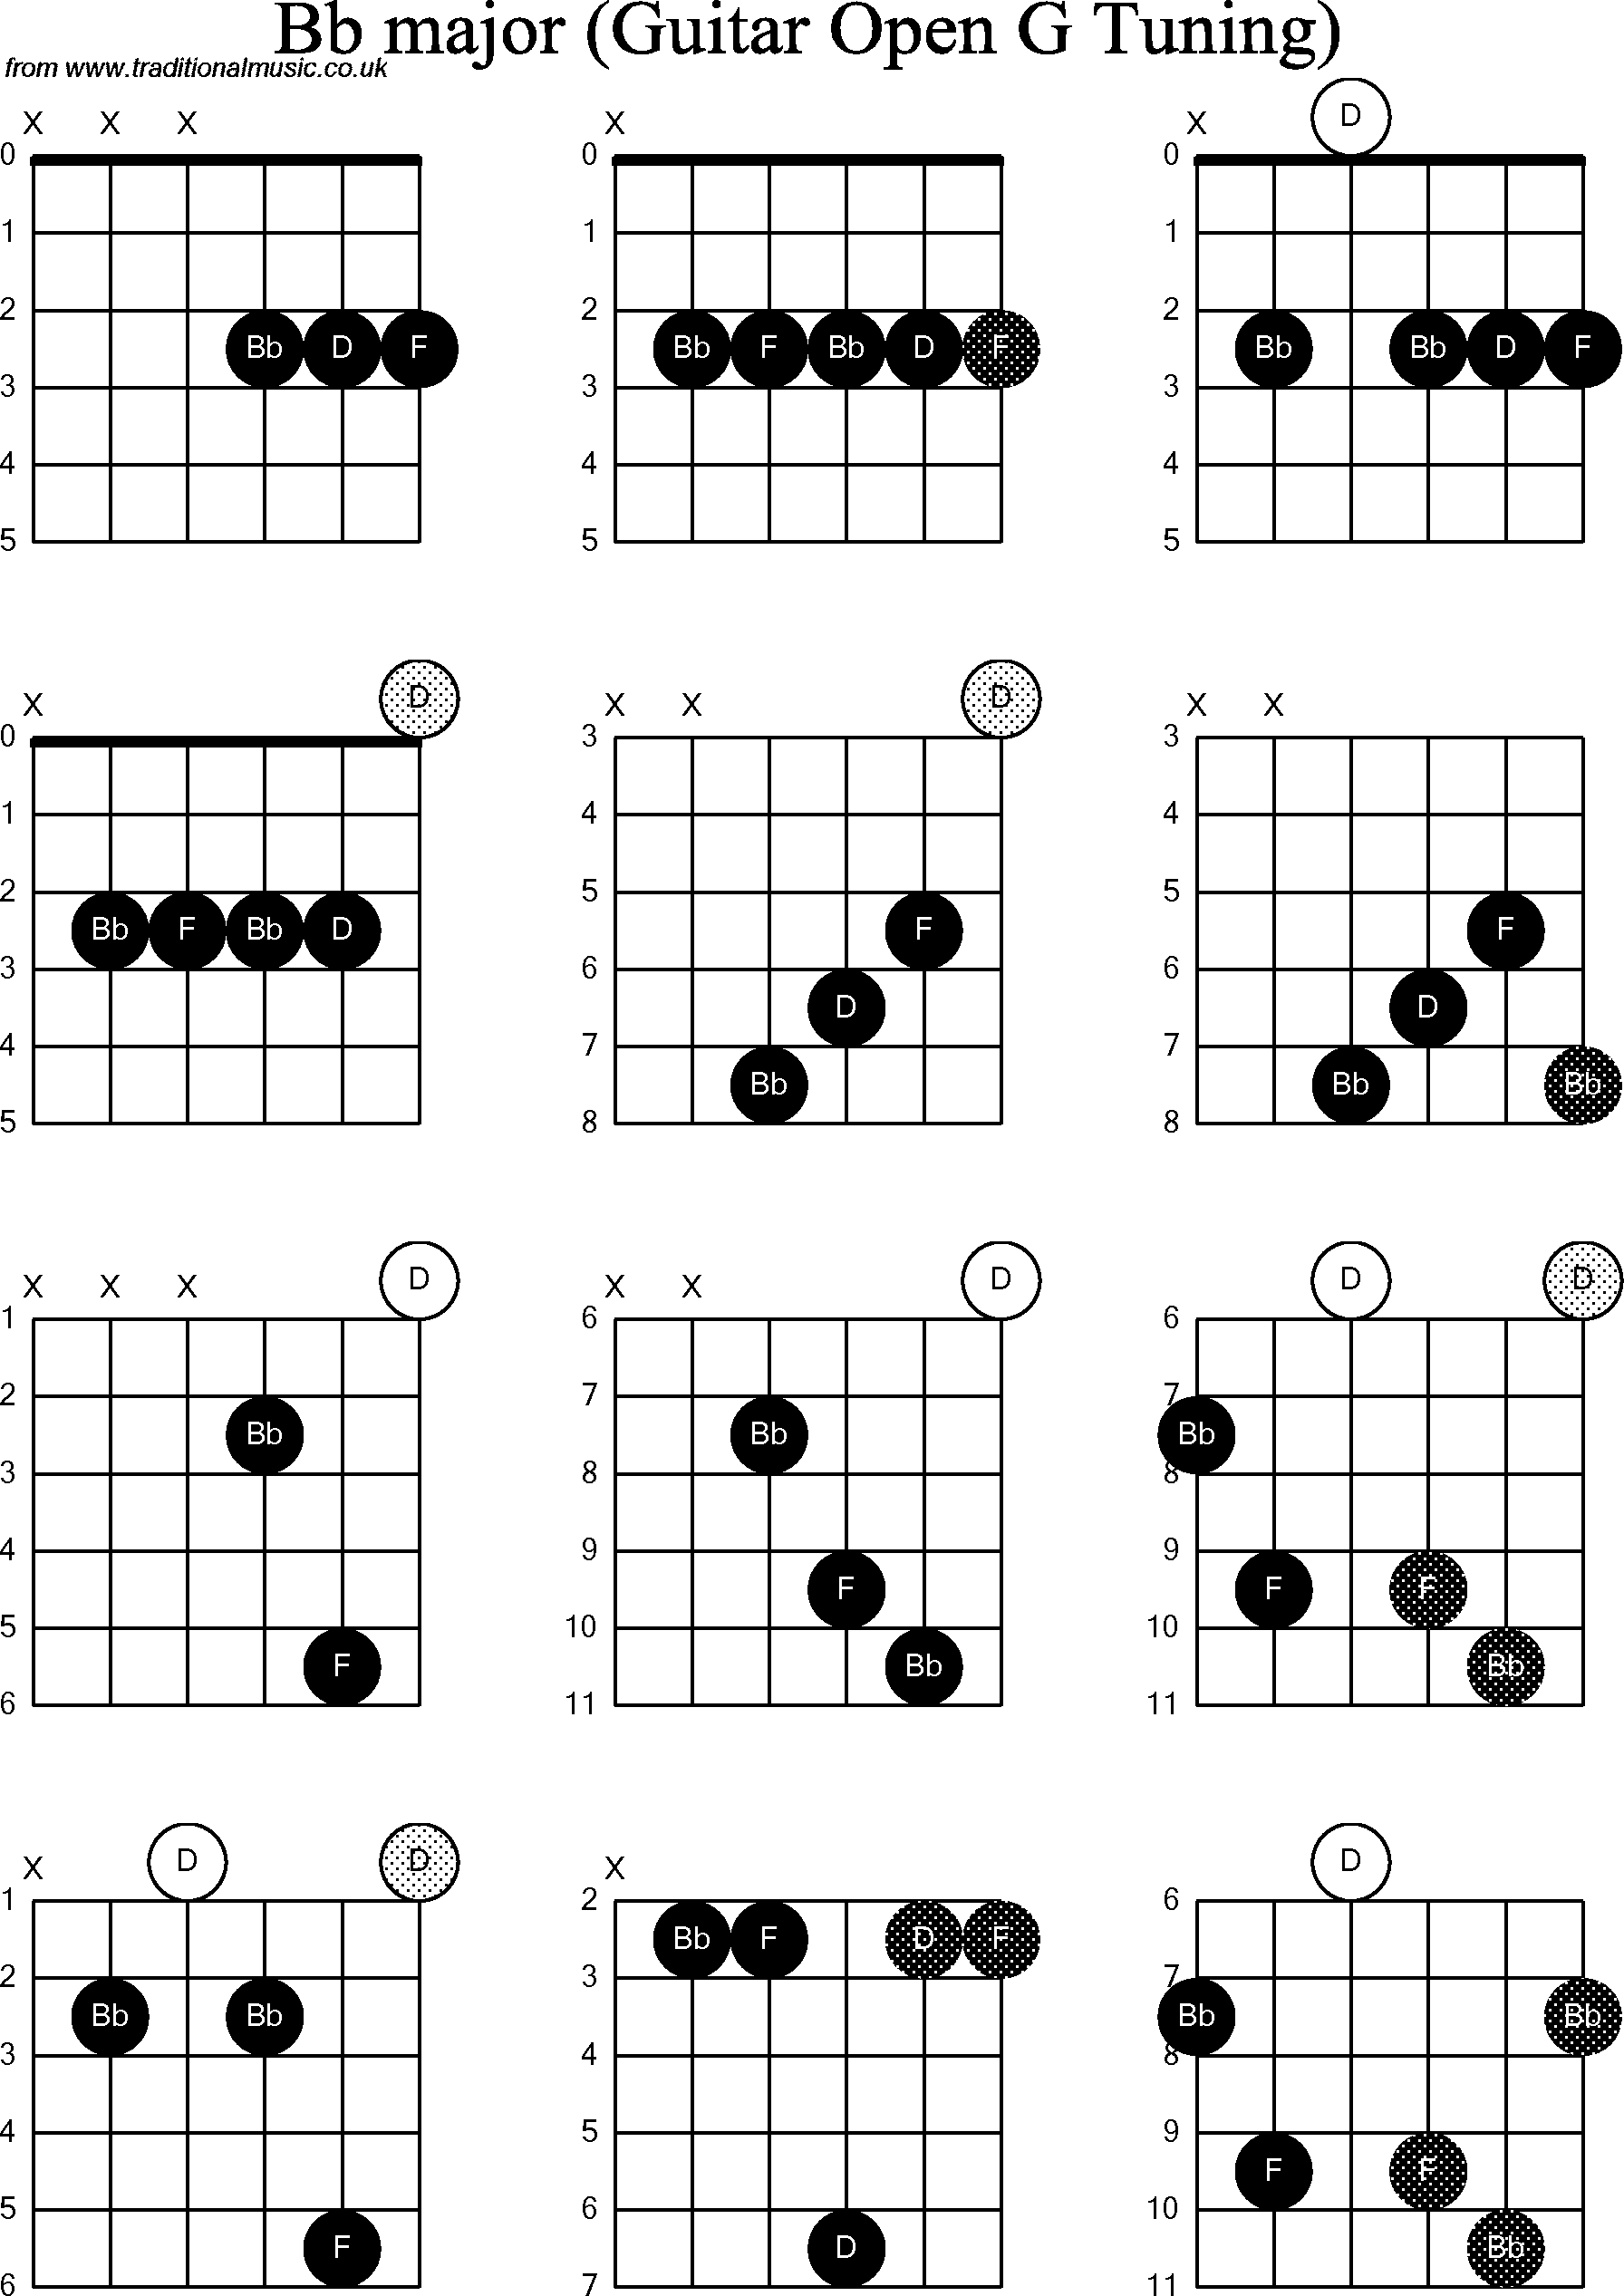 Chord diagrams for Dobro Bb